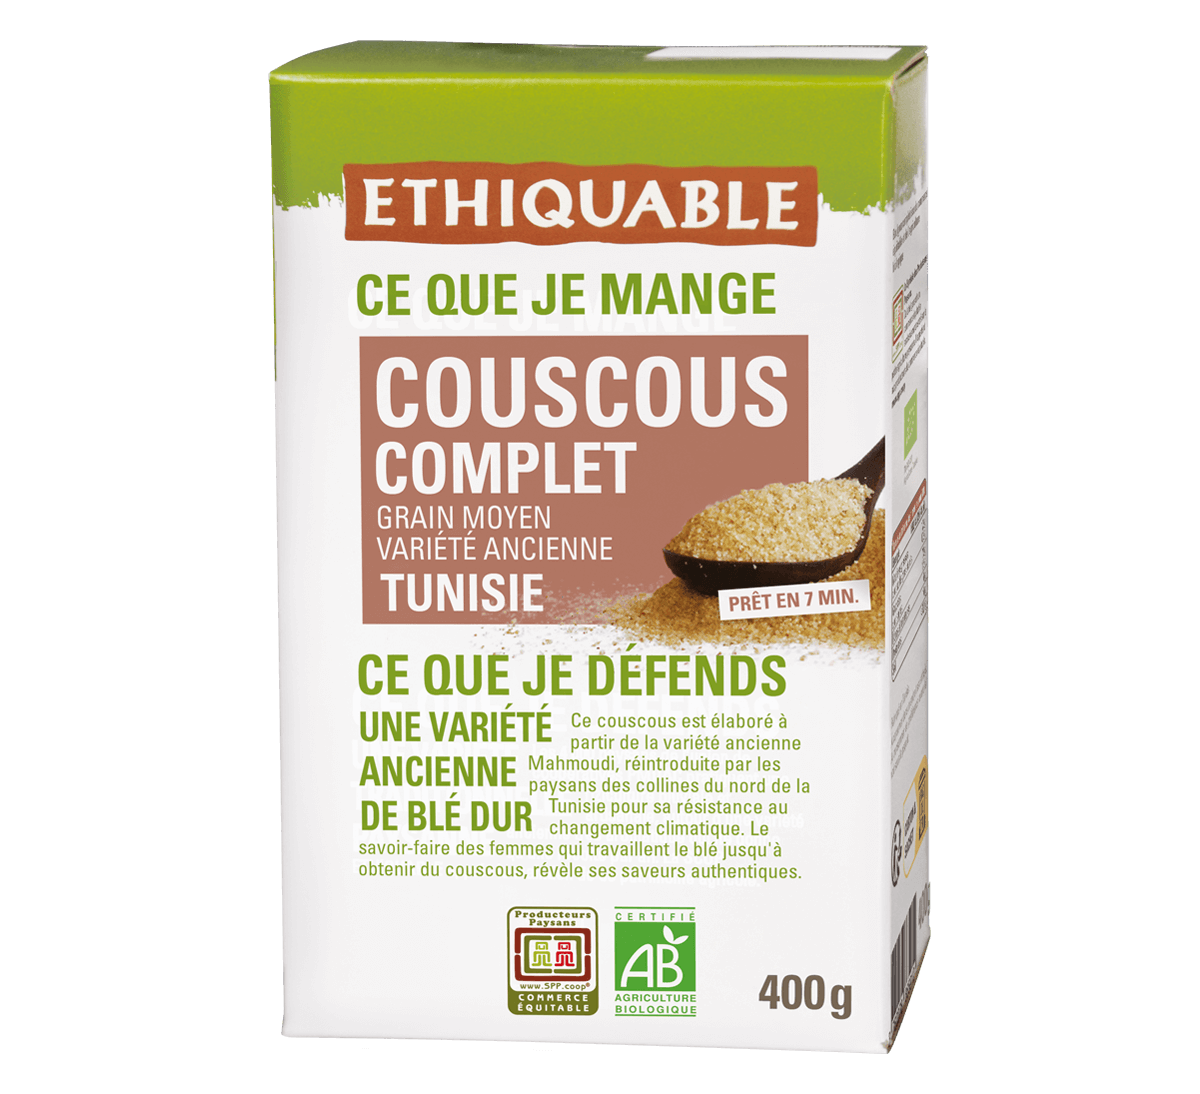 Ethiquable- Couscous complet blé ancien de Tunisie bio et issu du Commerce équitable